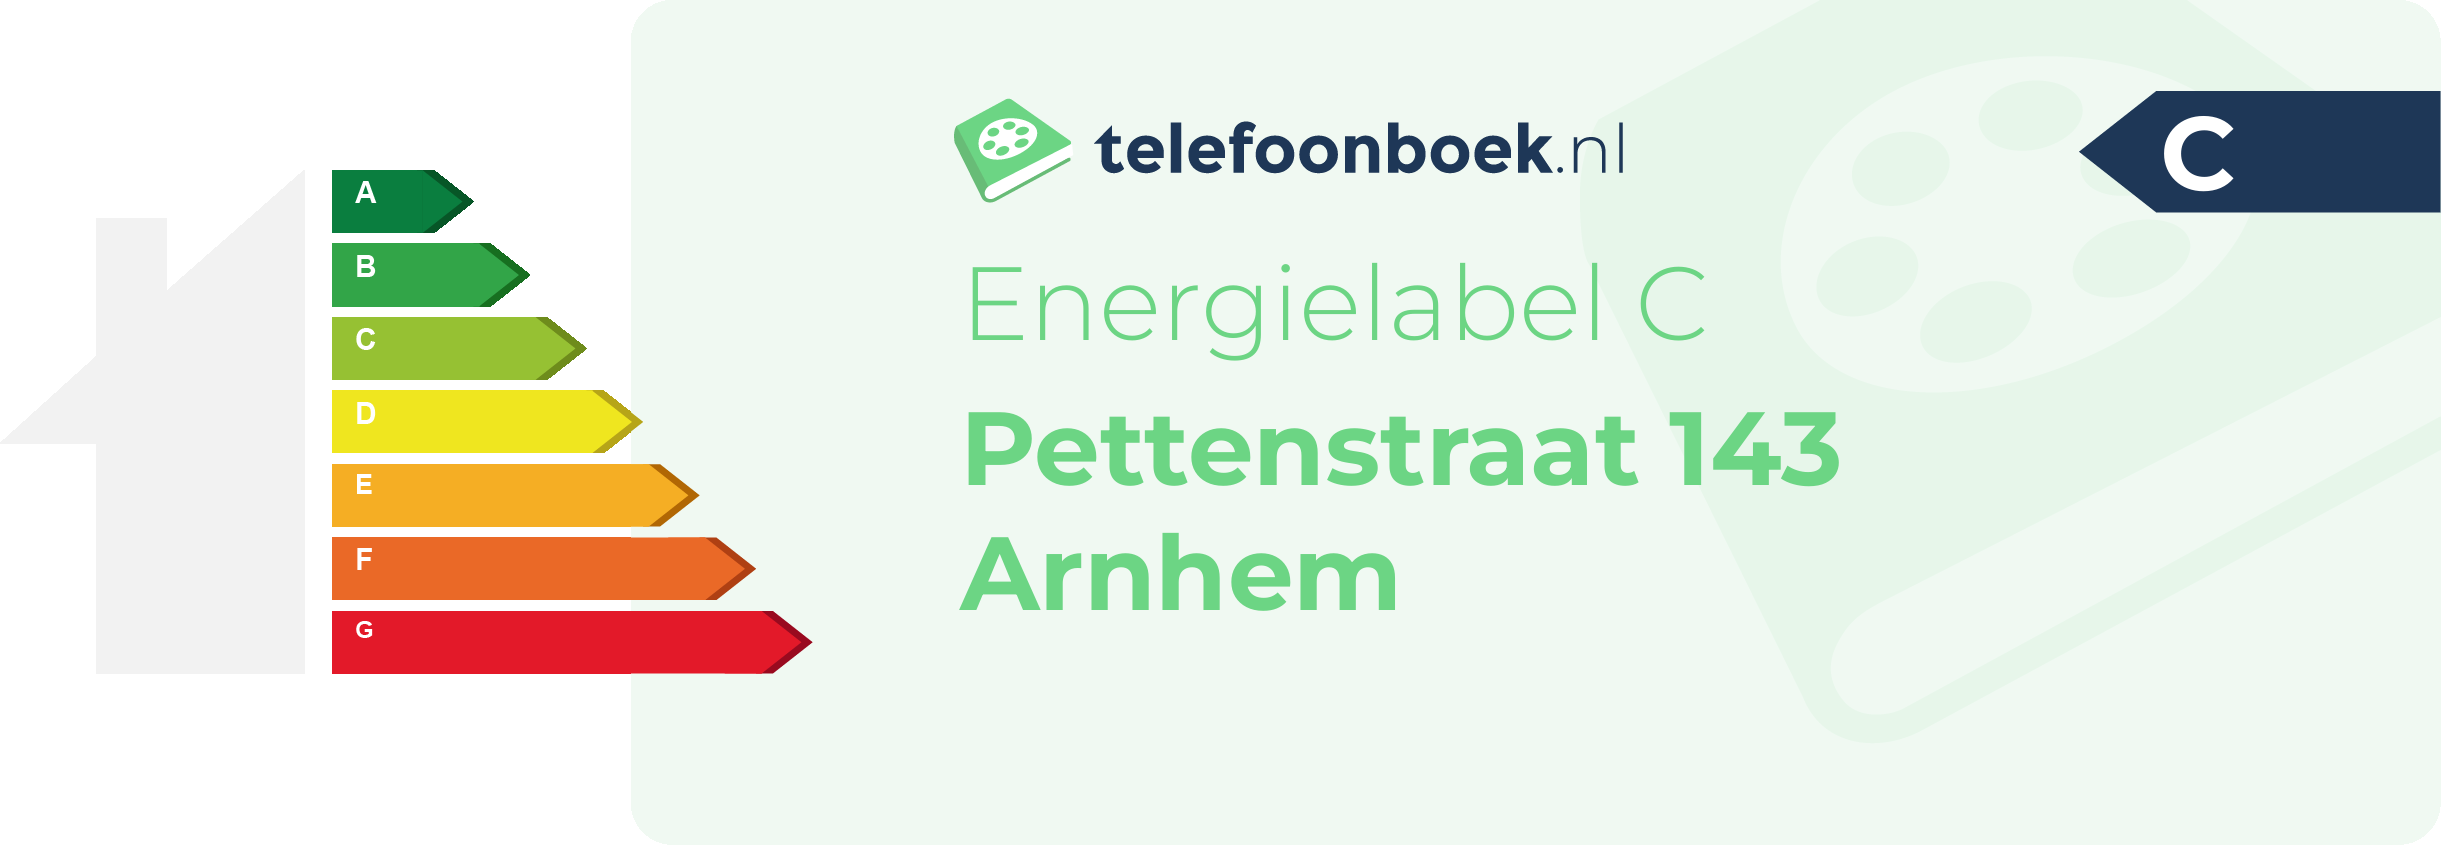 Energielabel Pettenstraat 143 Arnhem